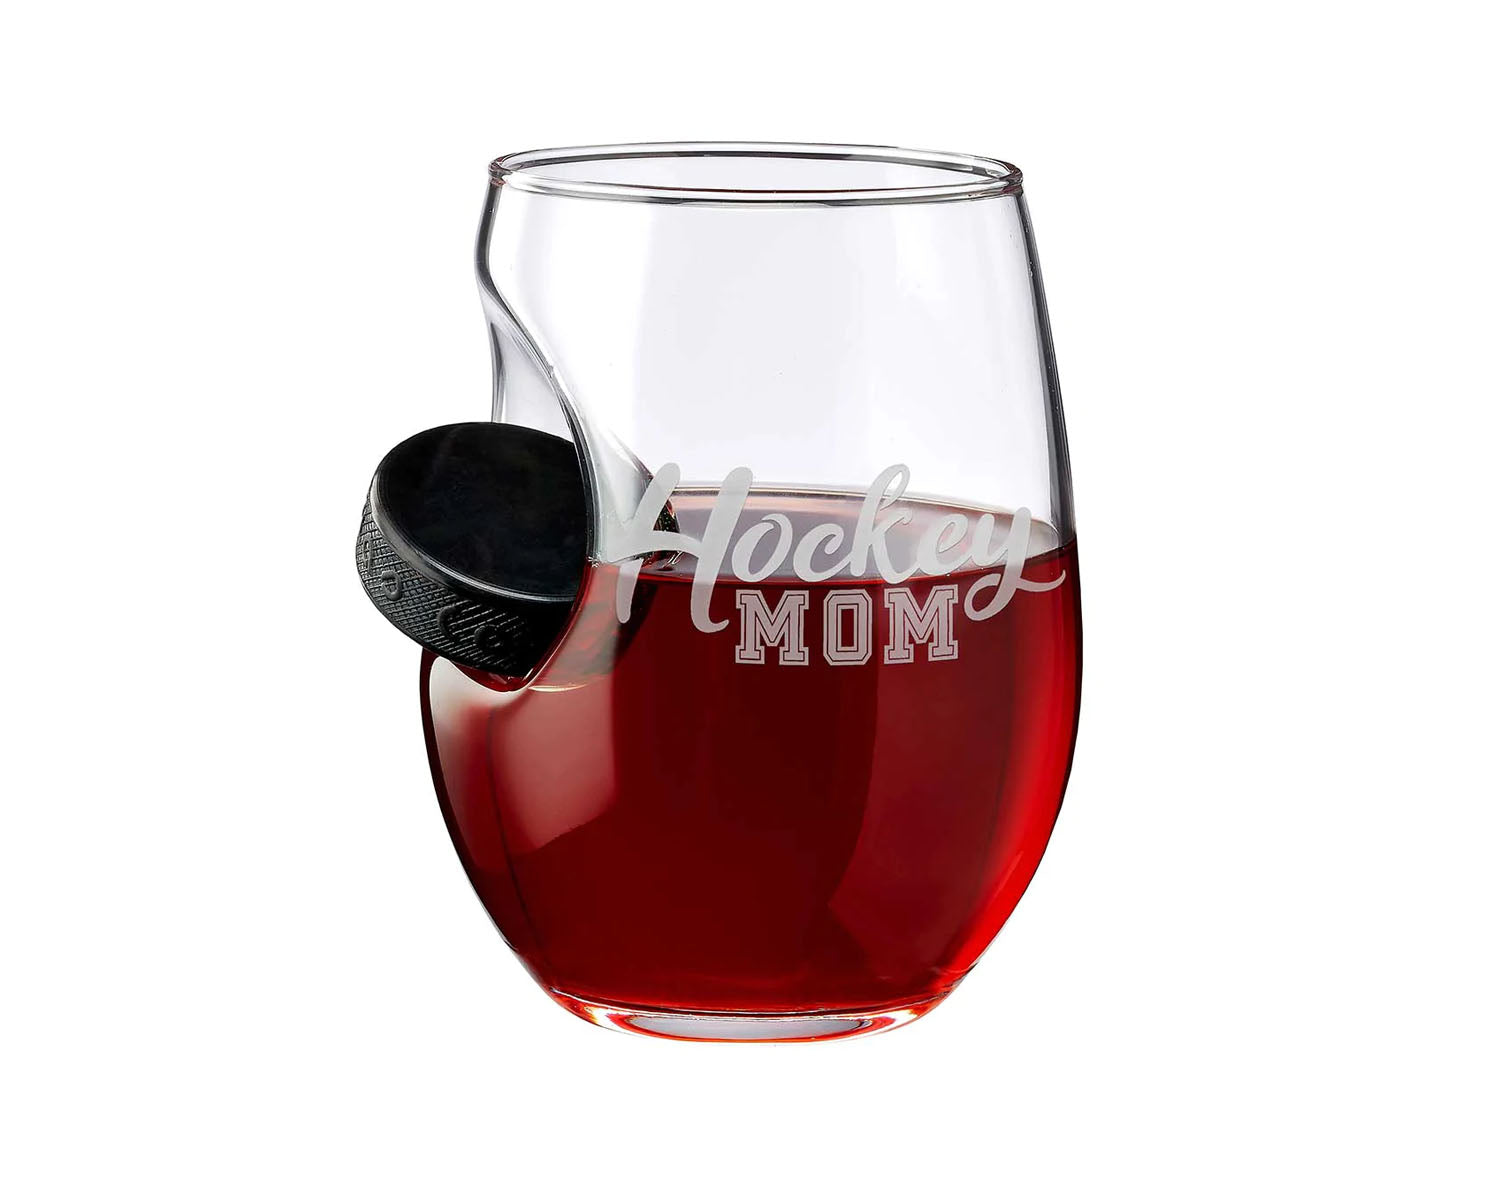 BenShot - "HOCKEY MOM" - Hockey Puck Wine Glass - 15oz